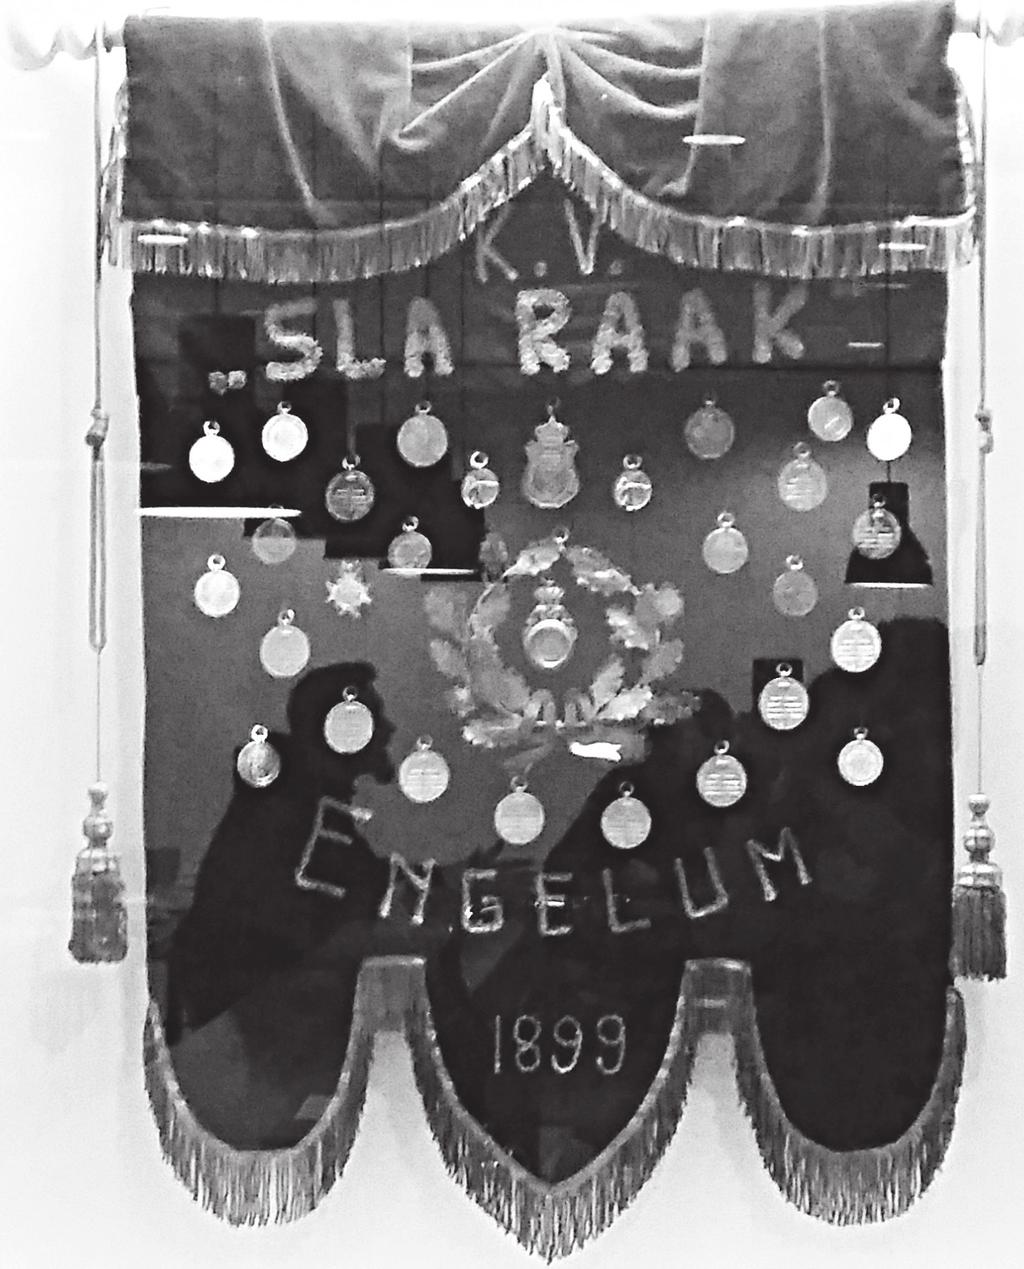 Kaatsen Er is bekend dat omstreeks het jaar 1850 in Engelum al werd gekaatst. In 1899 werd de oprichting van een kaatsvereniging onder de naam Sla Raak een feit.